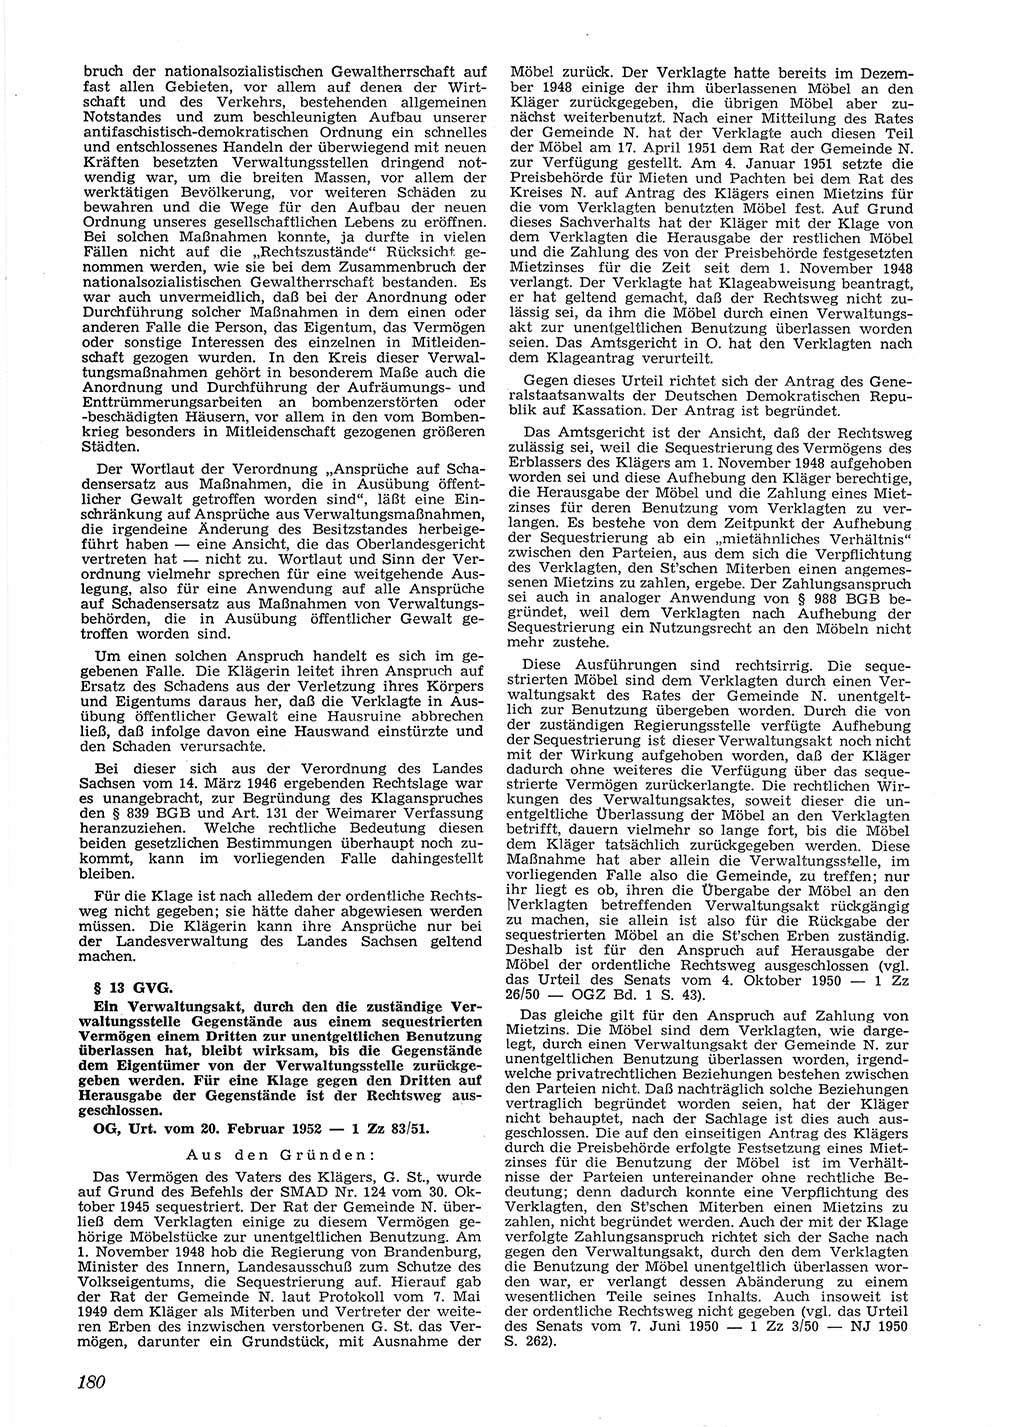 Neue Justiz (NJ), Zeitschrift für Recht und Rechtswissenschaft [Deutsche Demokratische Republik (DDR)], 6. Jahrgang 1952, Seite 180 (NJ DDR 1952, S. 180)